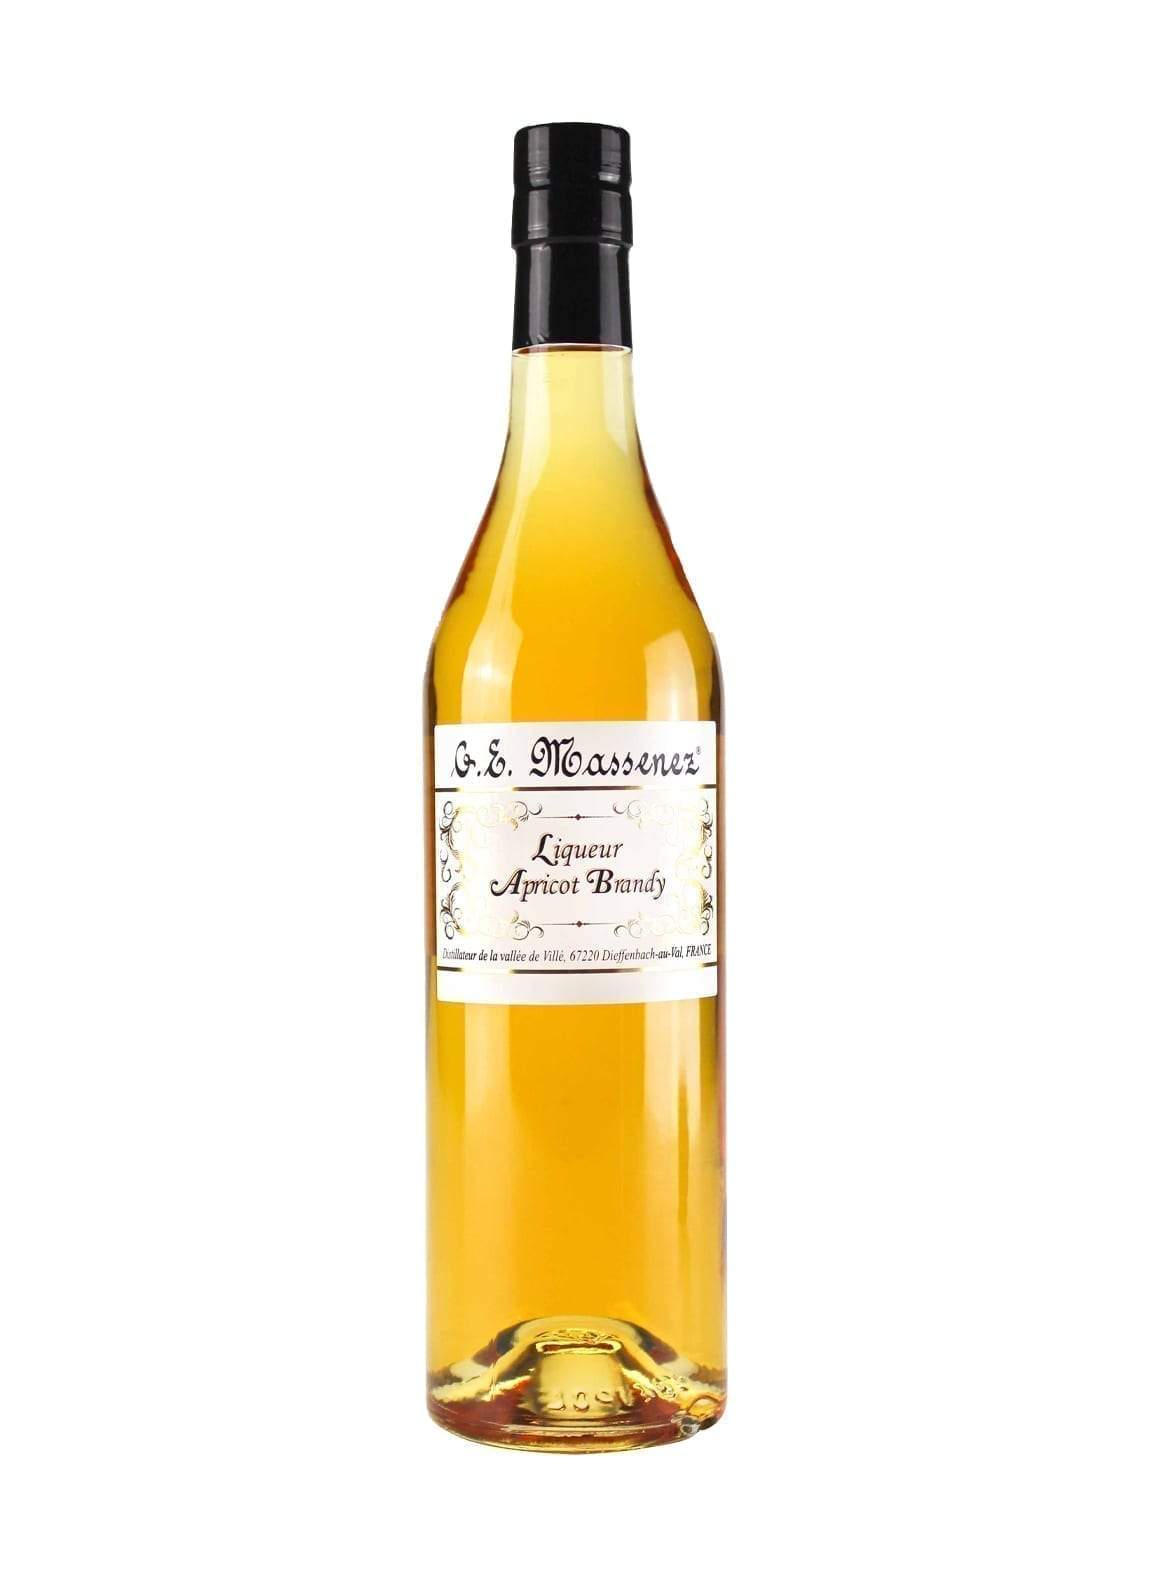 Massenez Apricot Brandy liqueur 25% 700ml | Liqueurs | Shop online at Spirits of France